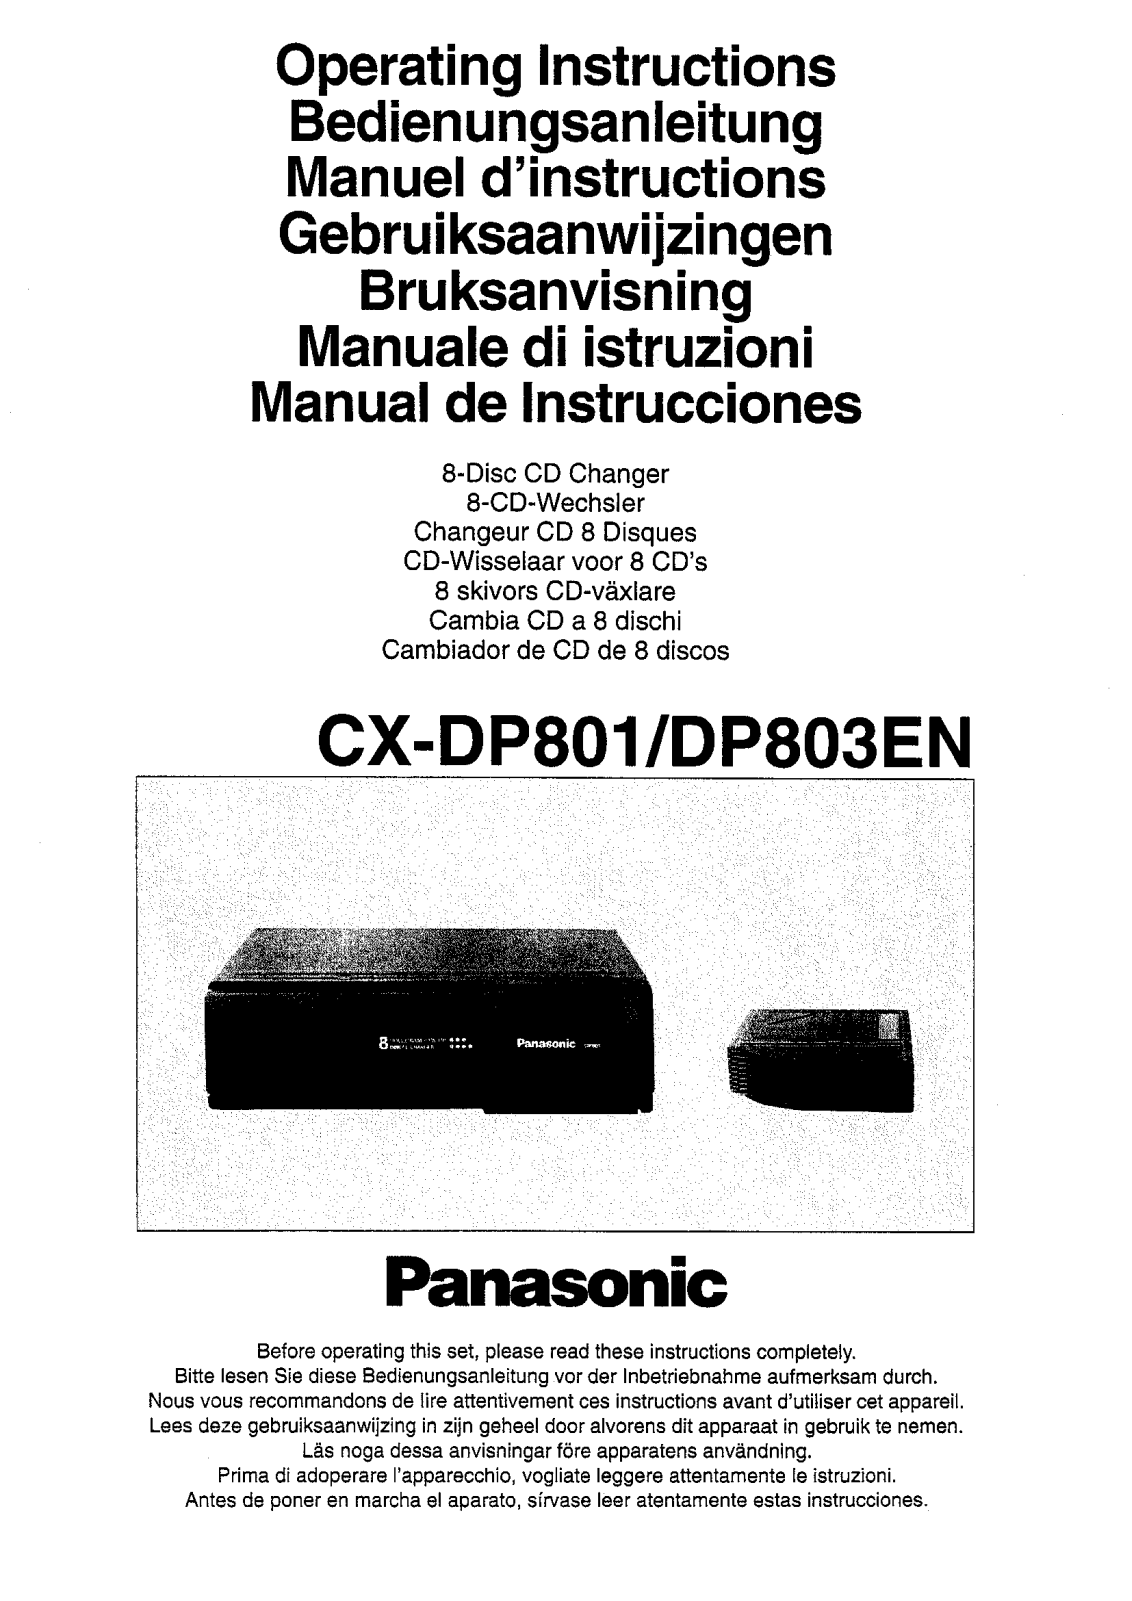 Panasonic CX-DP801, CX-DP803EN Operating Instructions